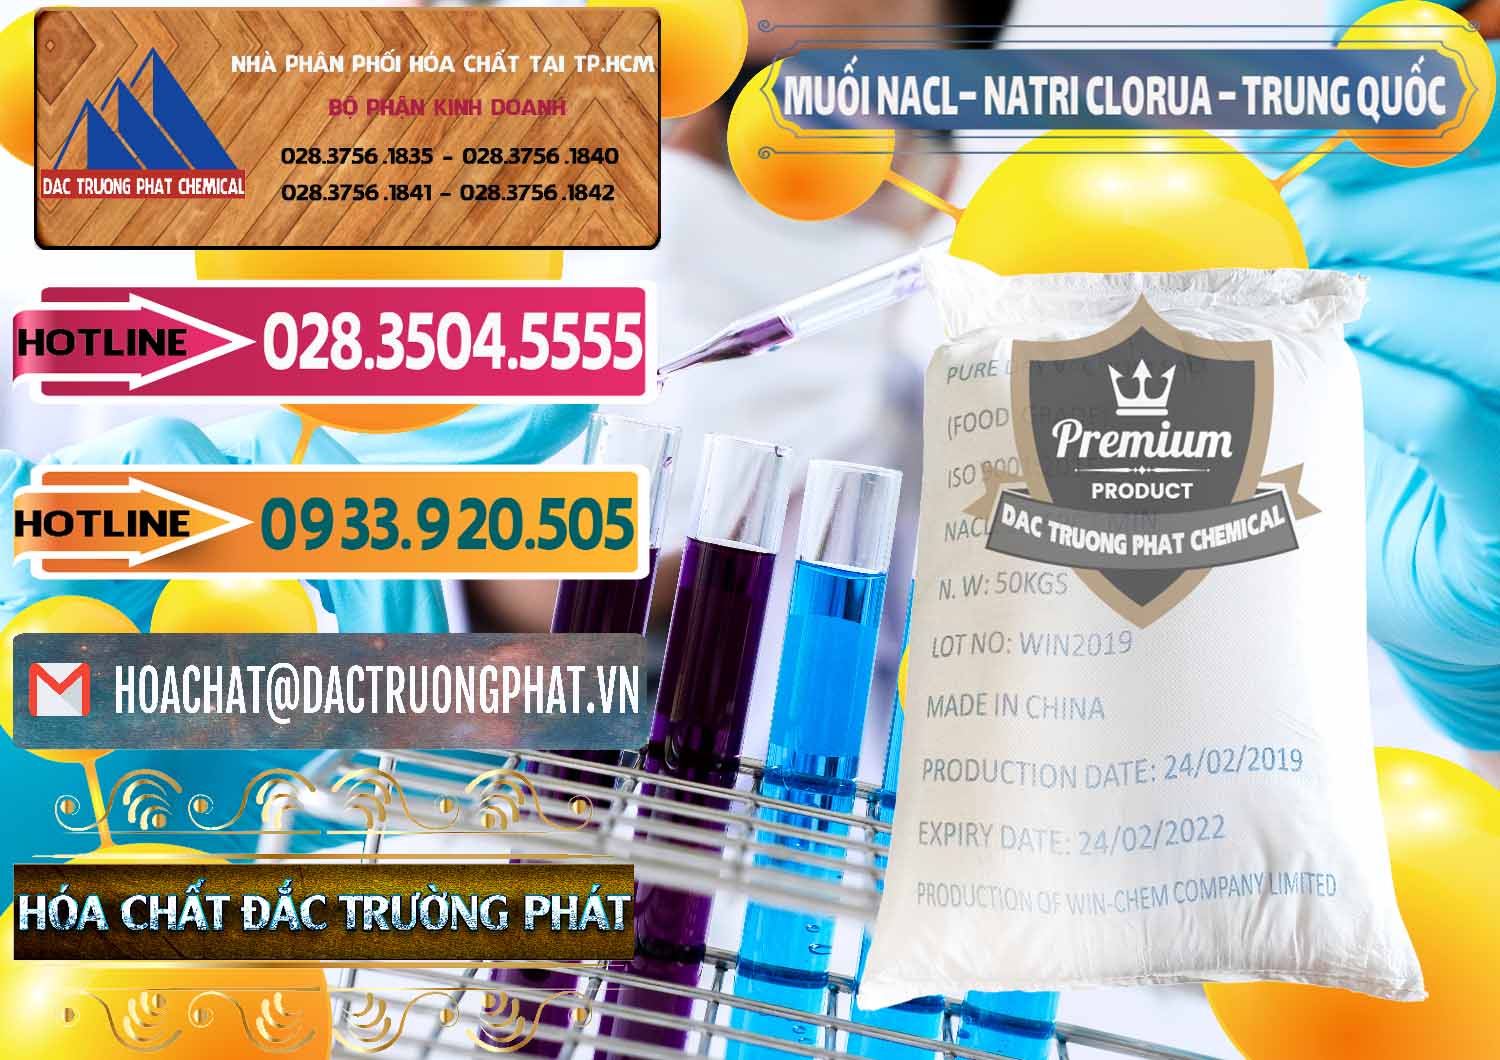 Công ty chuyên kinh doanh & bán Muối NaCL – Sodium Chloride Trung Quốc China - 0097 - Công ty chuyên cung cấp _ kinh doanh hóa chất tại TP.HCM - dactruongphat.vn